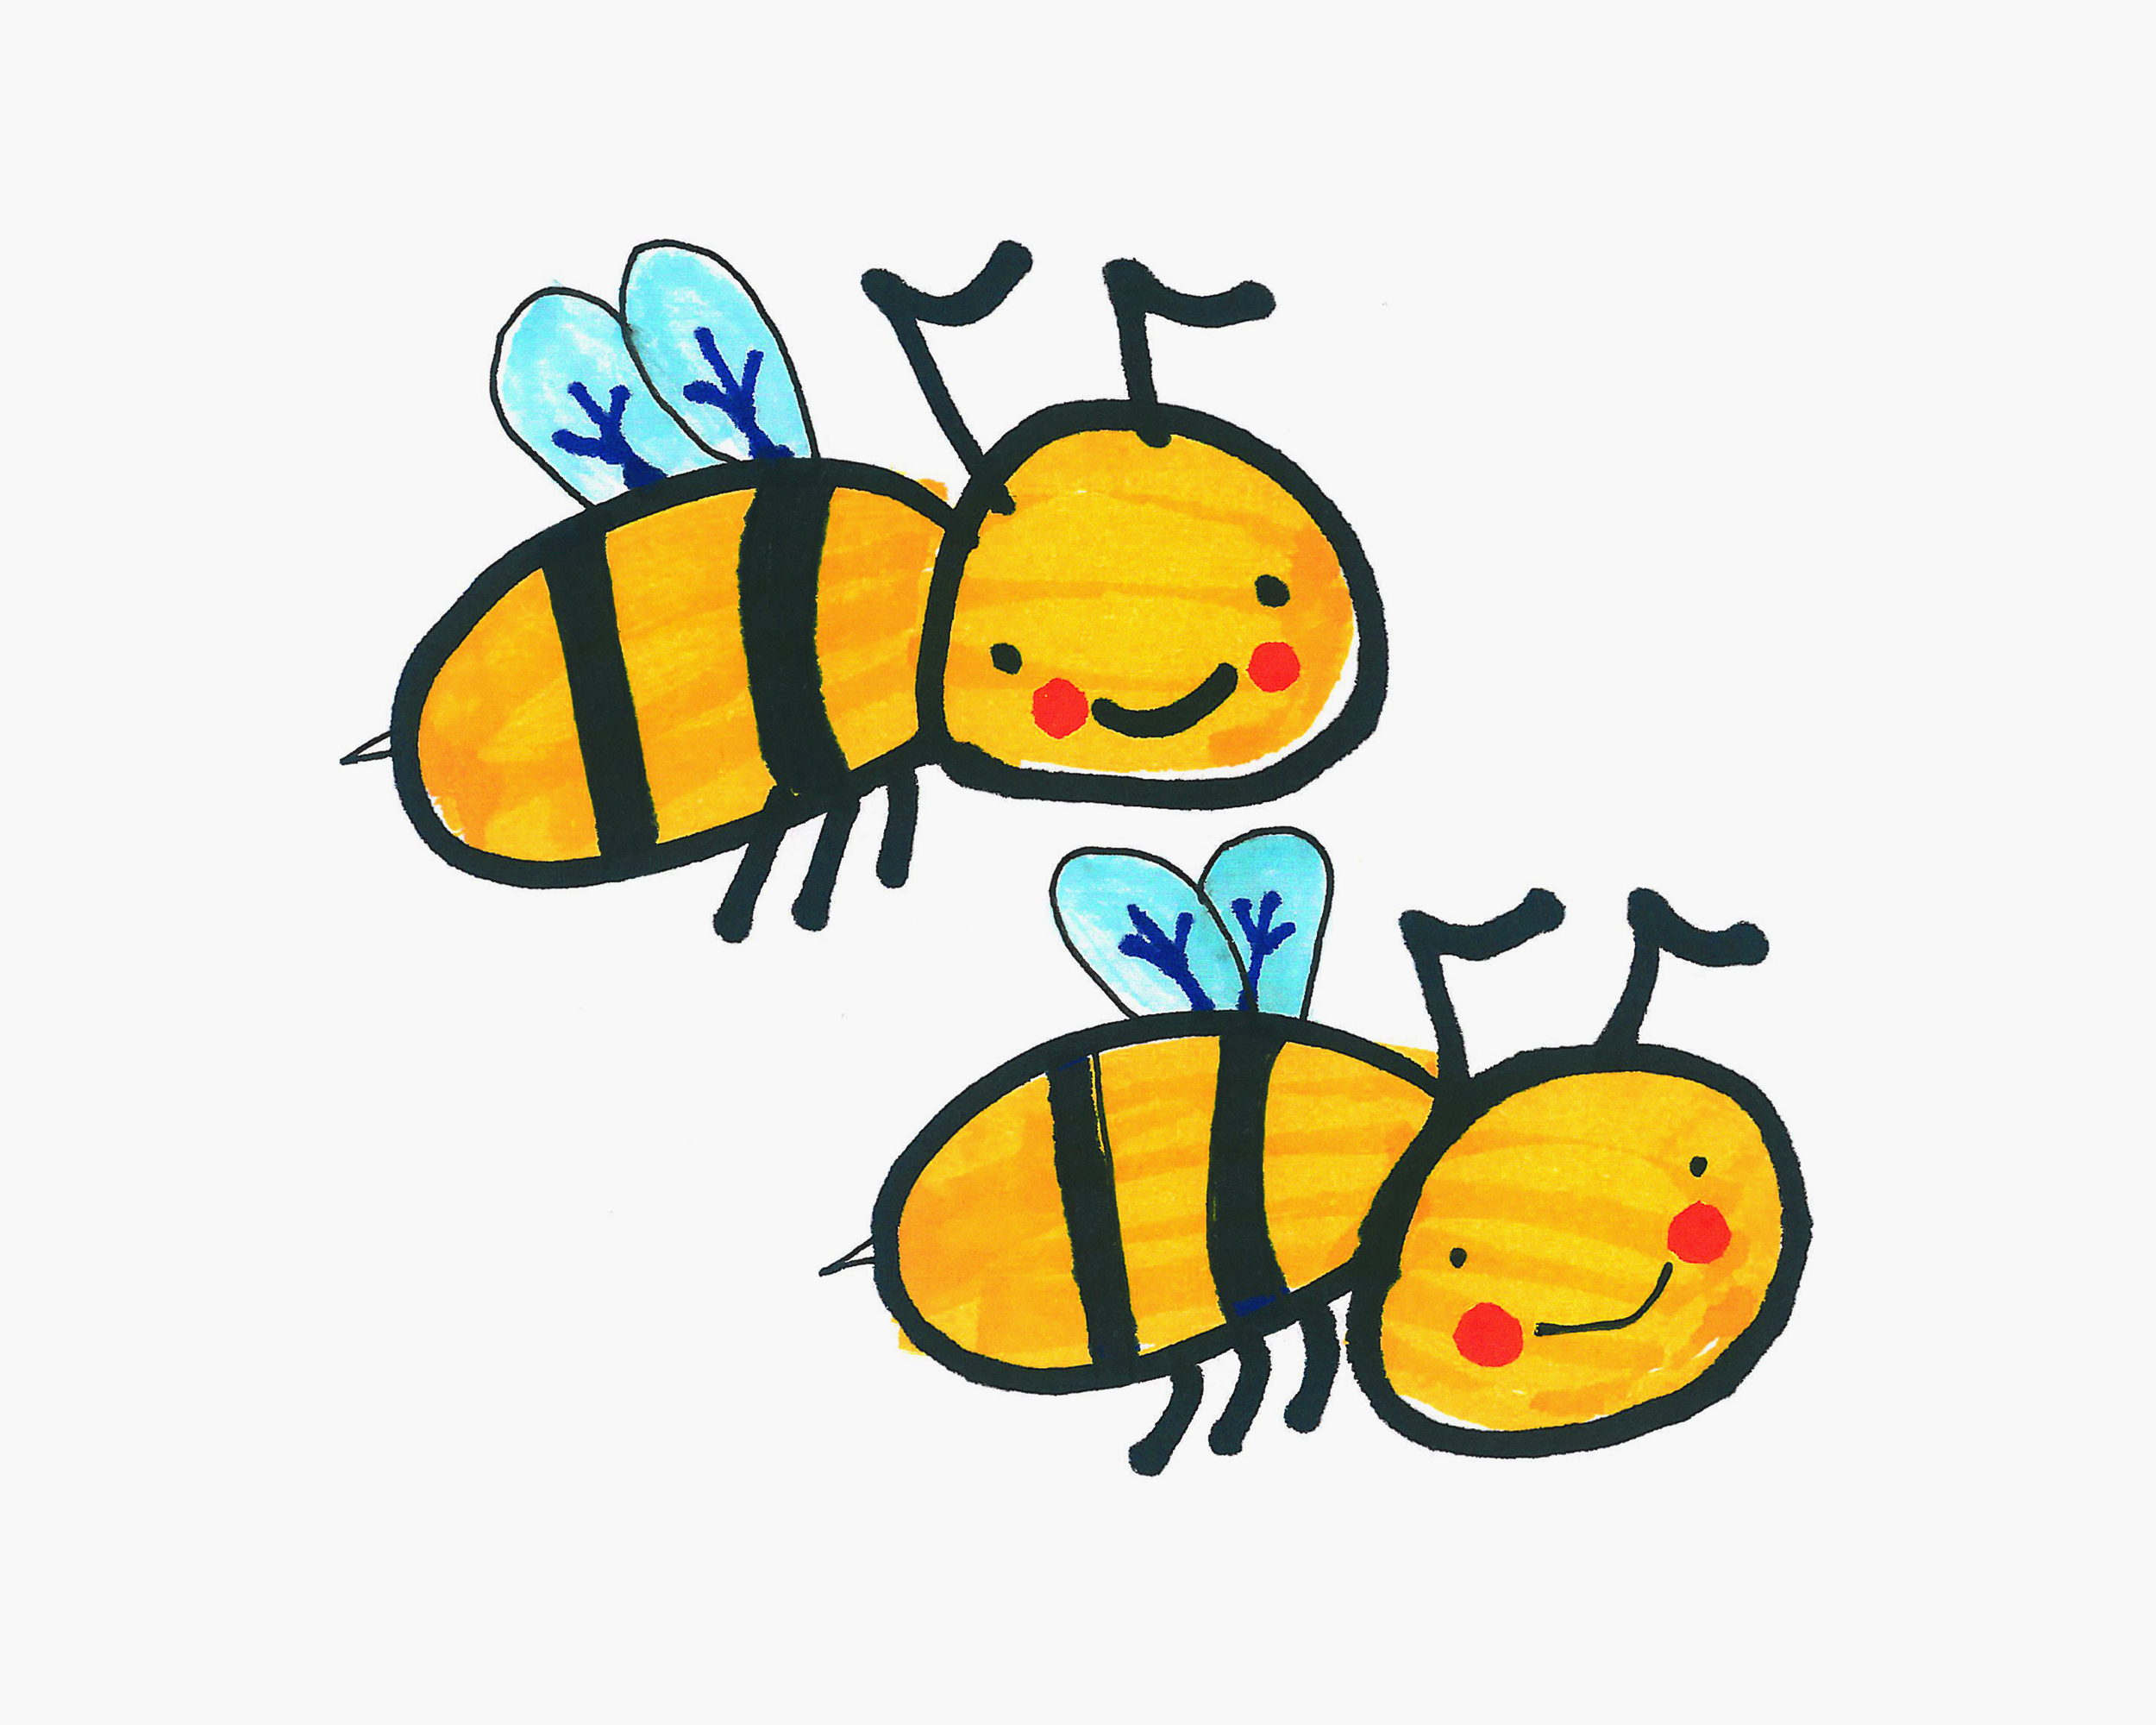 勤劳可爱的小蜜蜂简笔画的画法 儿童创意动物卡通画 肉丁儿童网